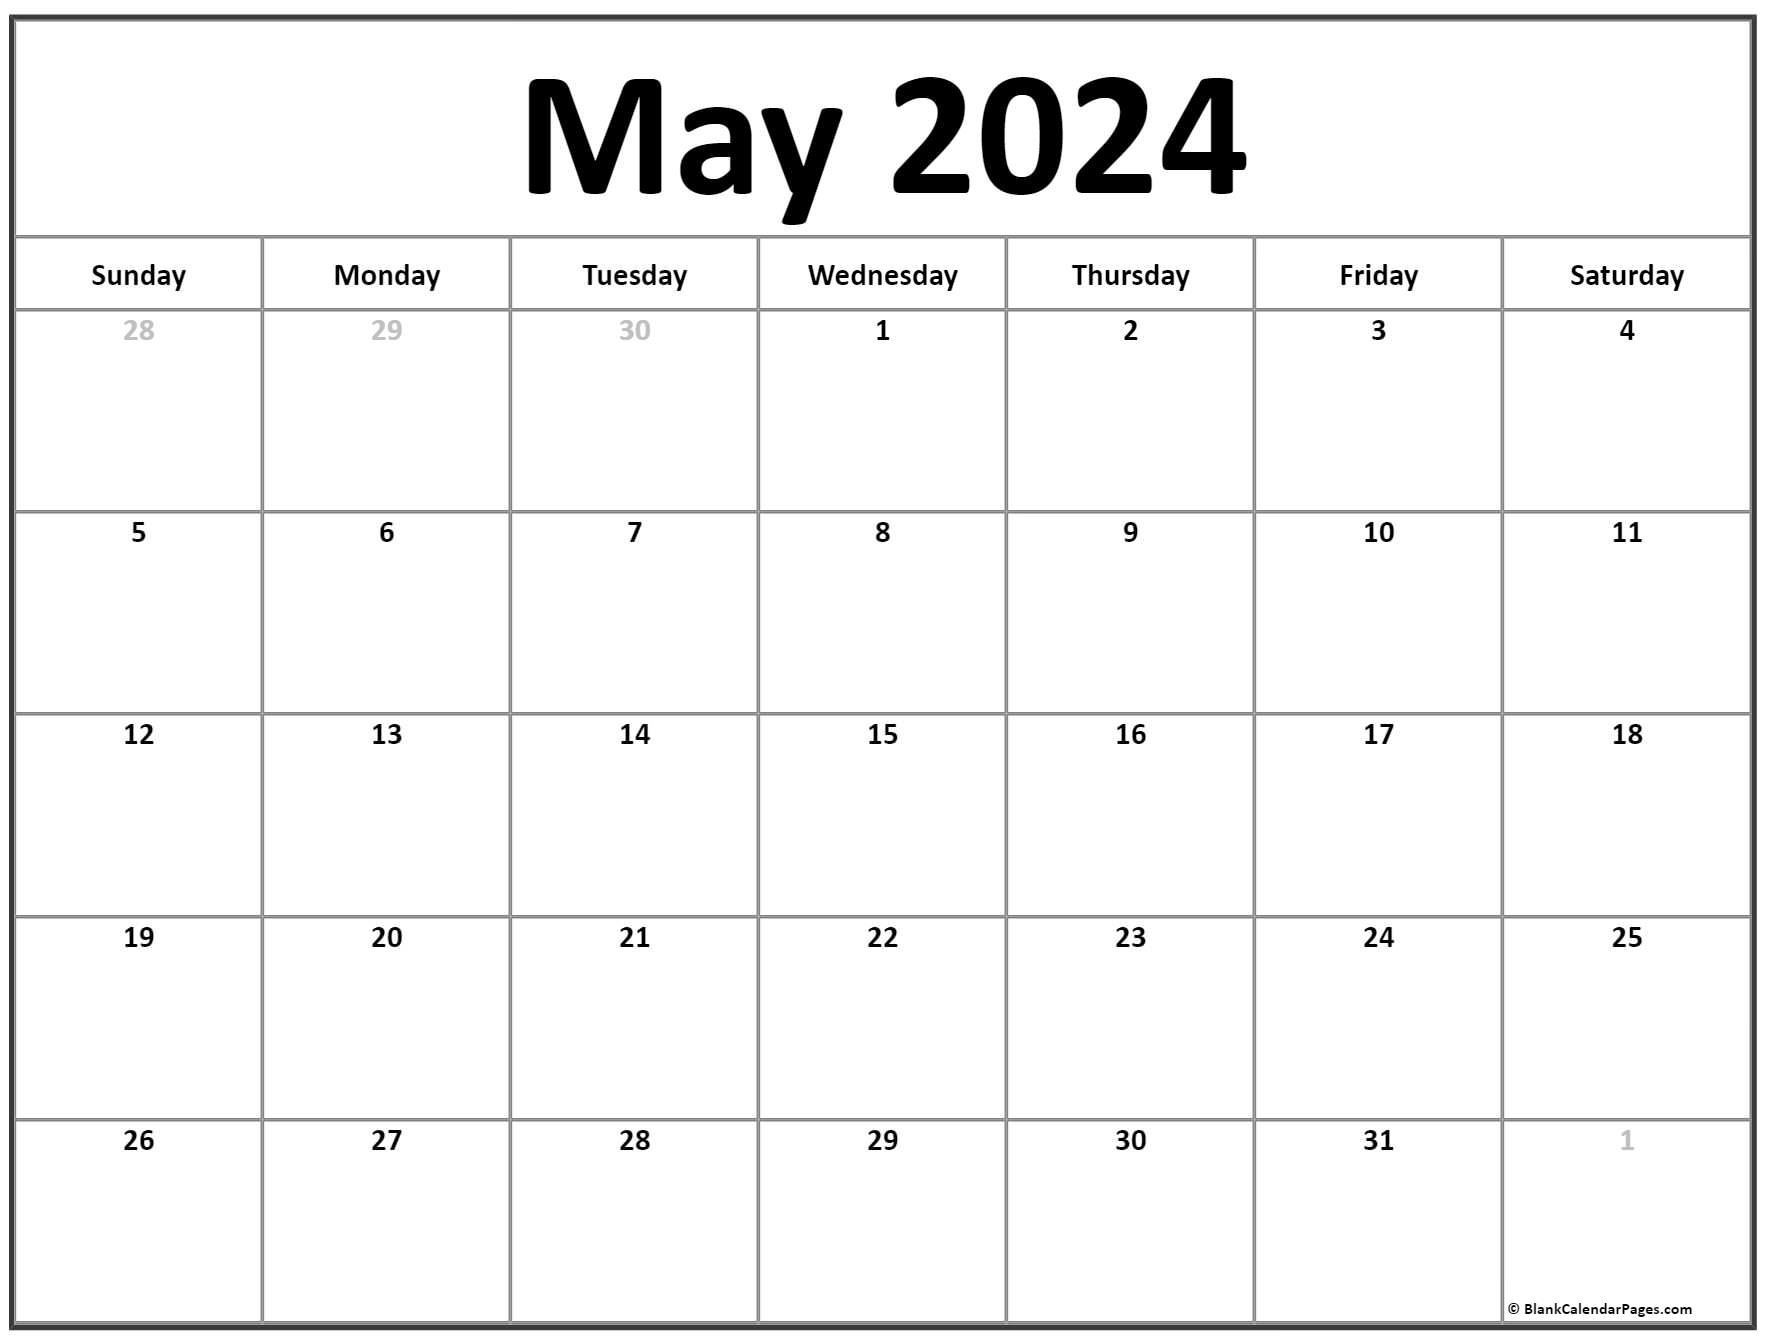 Wiki Calendar 2023 Printable By Month PELAJARAN